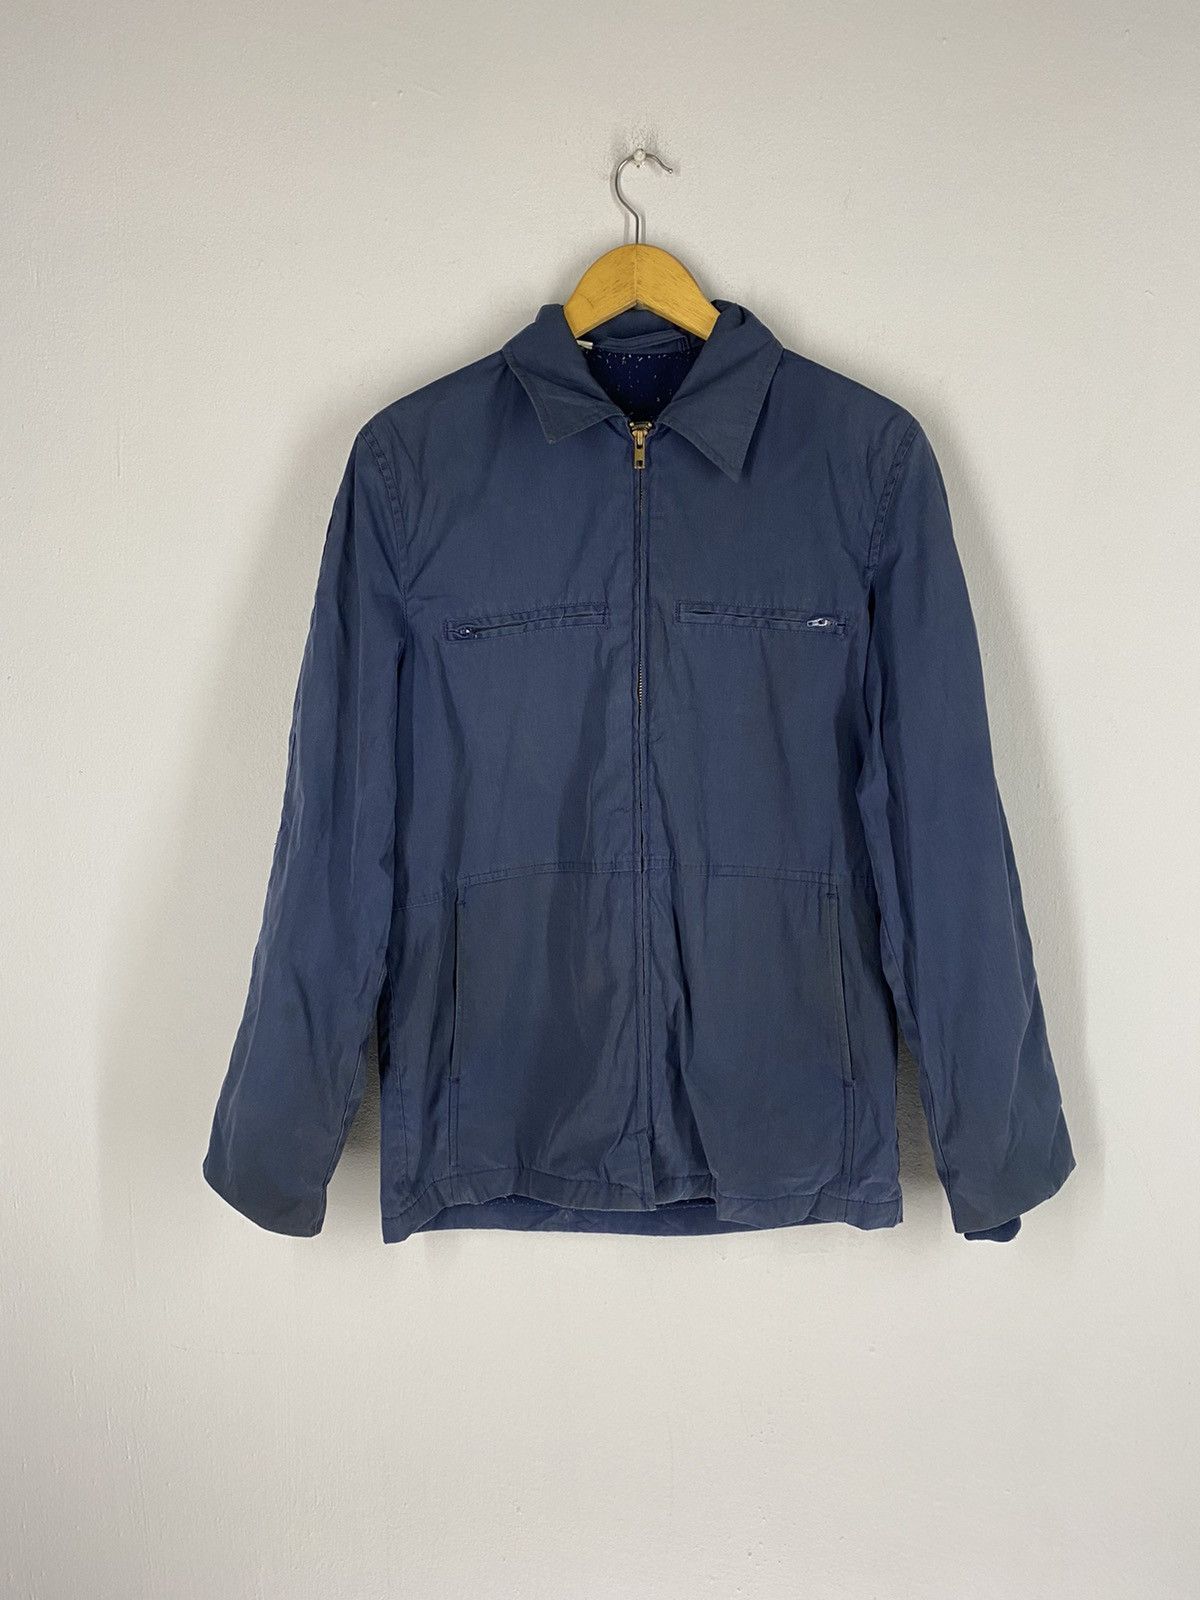 Usn Vintage 80s USN 32 Top Zipper Jacket Size US S / EU 44-46 / 1 - 6 Thumbnail